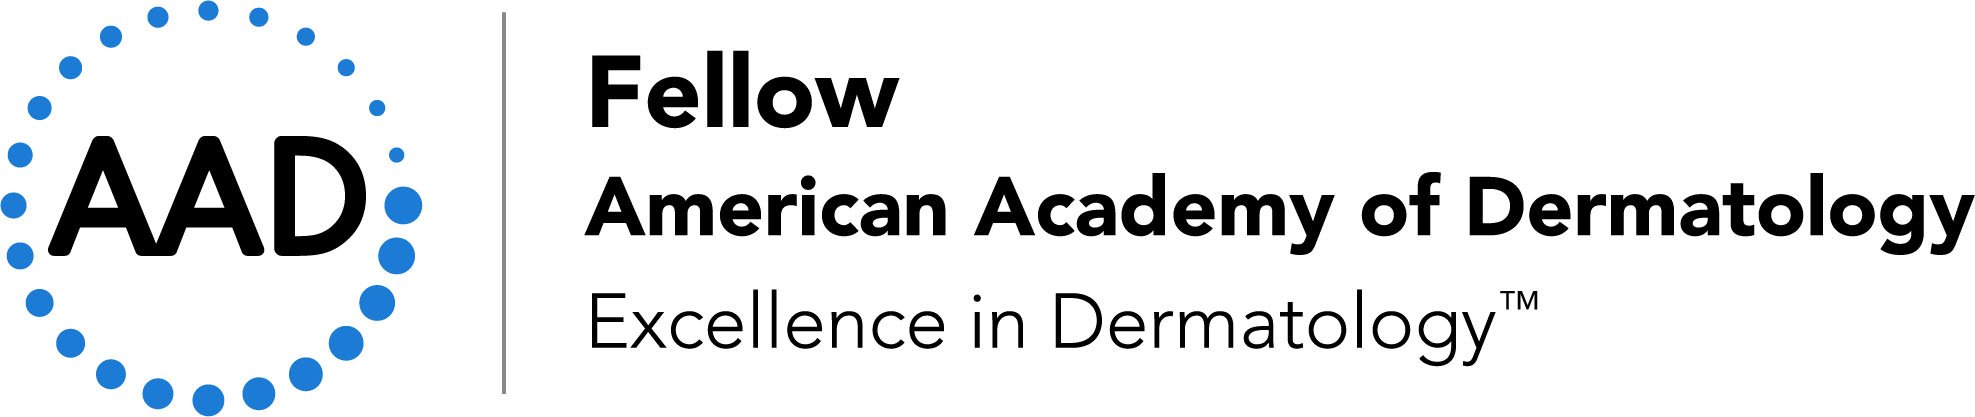 AAD-Fellow-logo.jpg